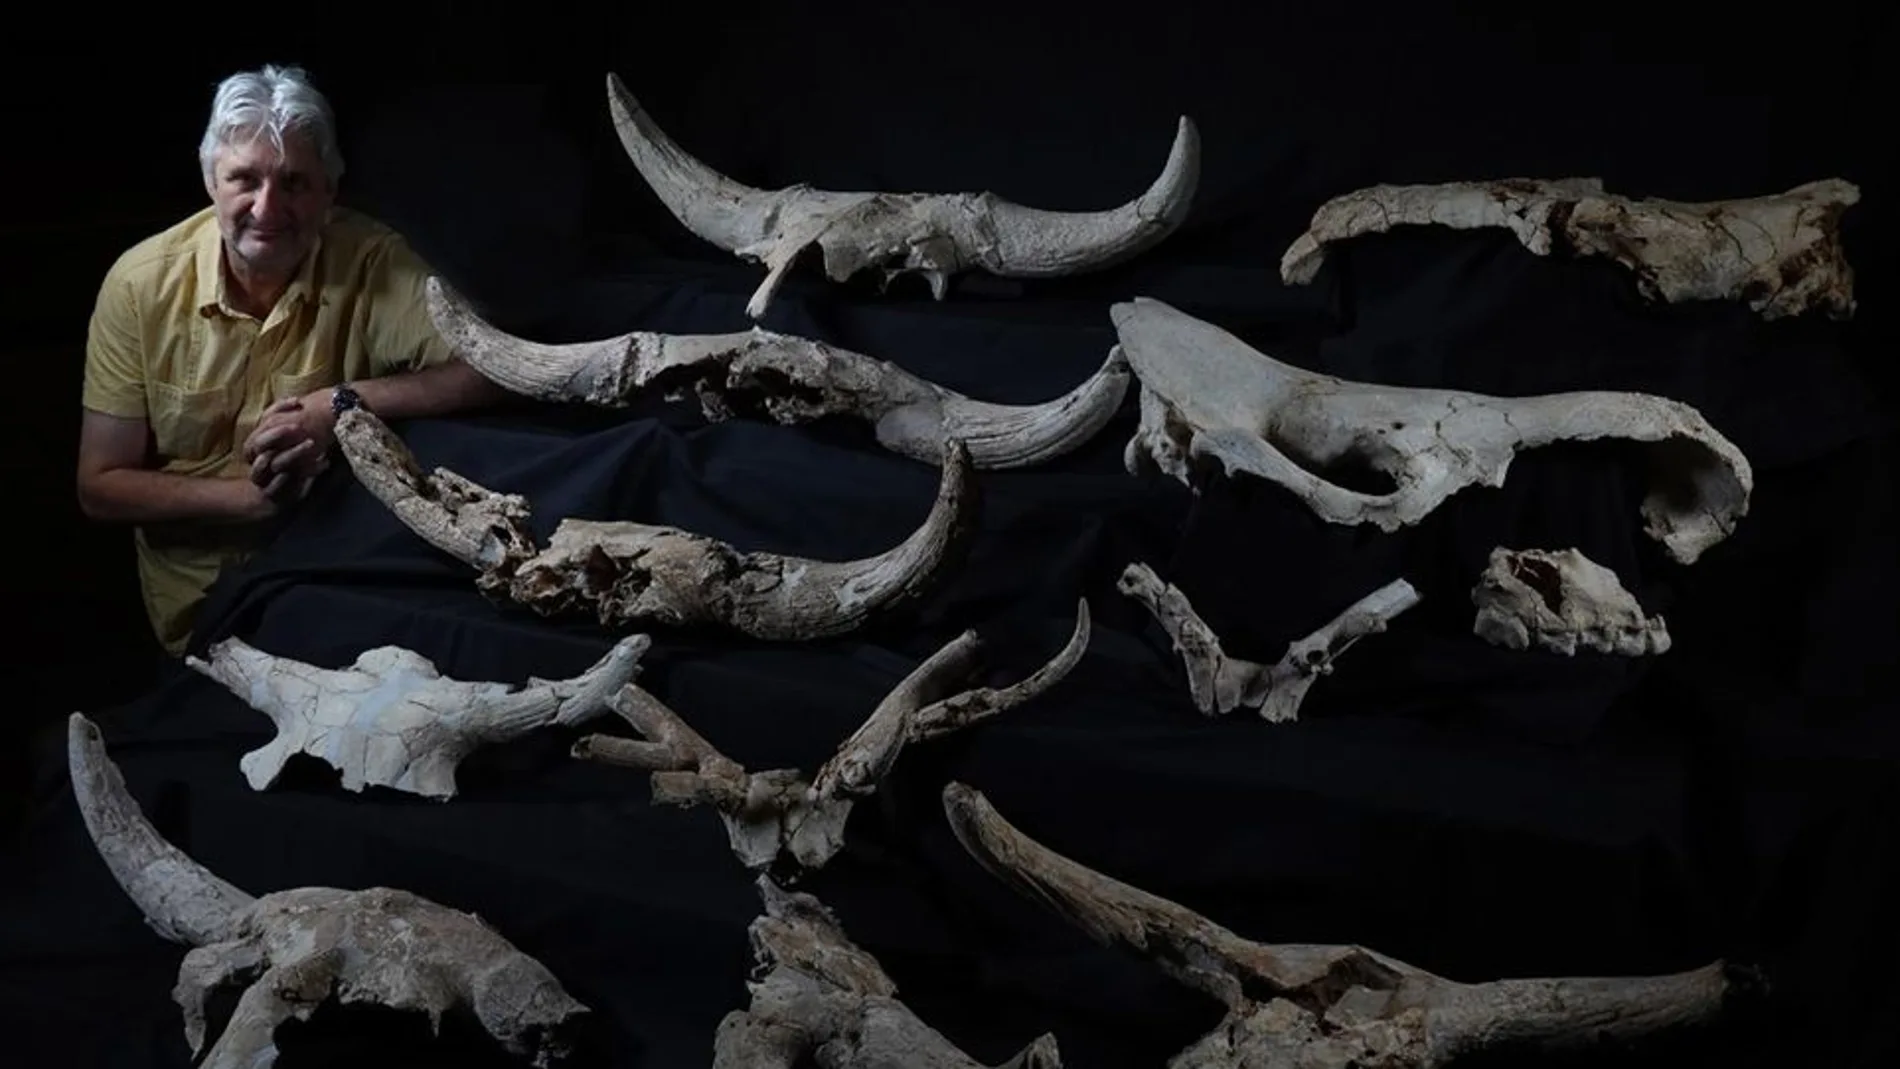 Enrique Baquedano y algunos de los cráneos hallados en la Cueva Des-Cubierta (Pinilla del Valle, Madrid).